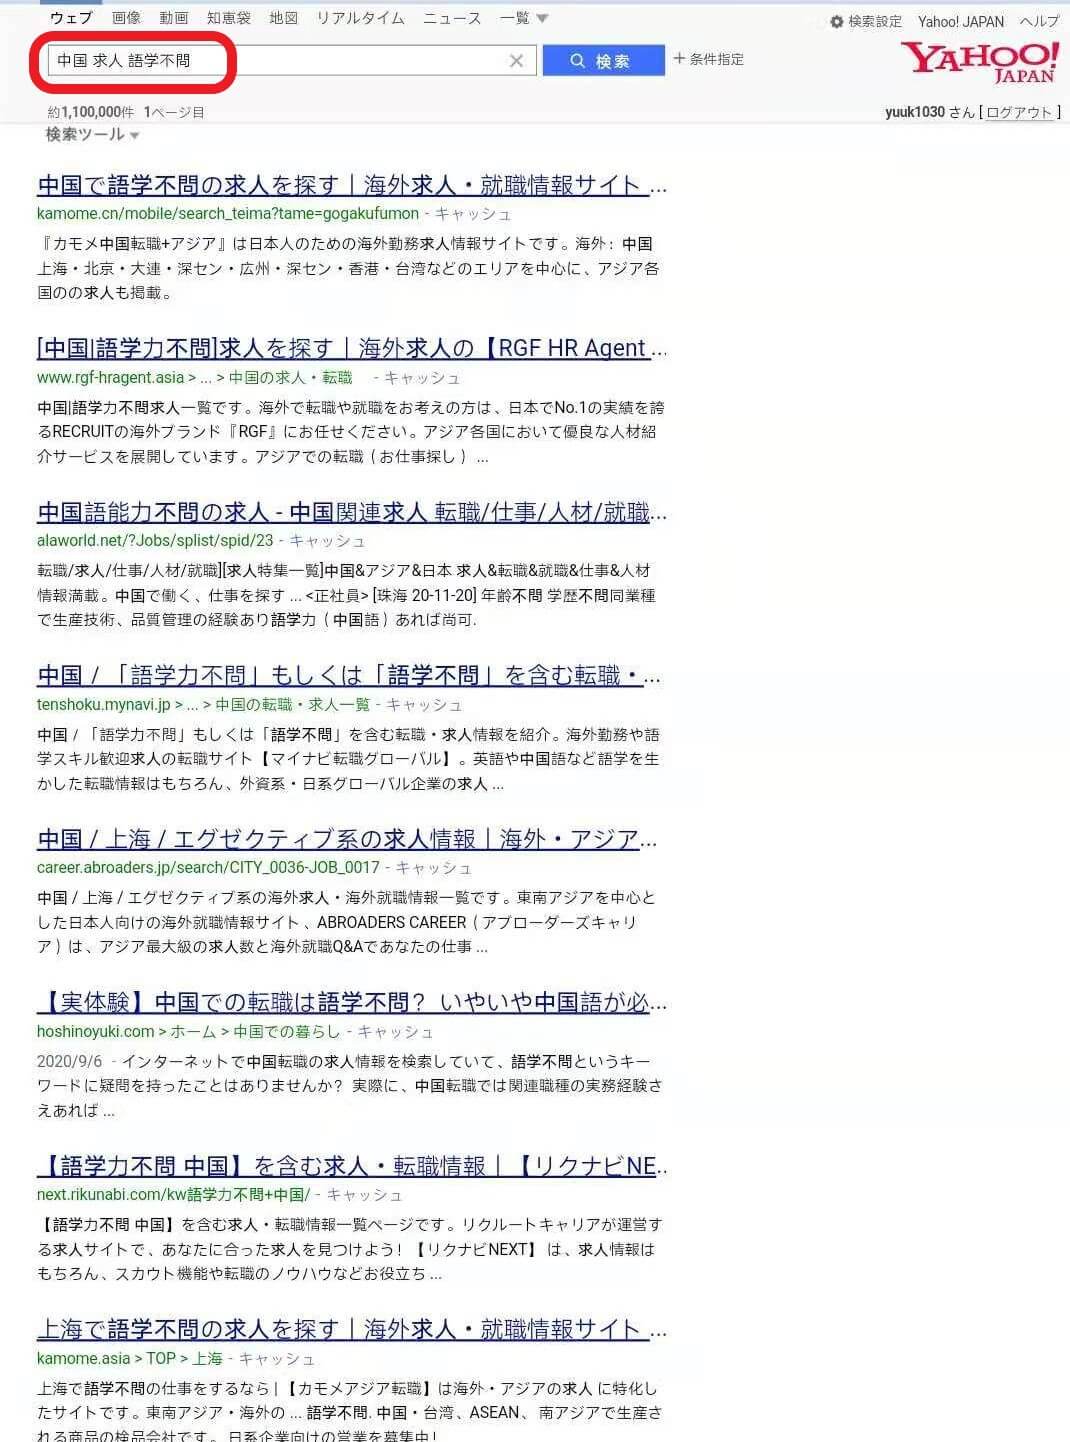 中国で語学力不問の求人の検索結果の写真